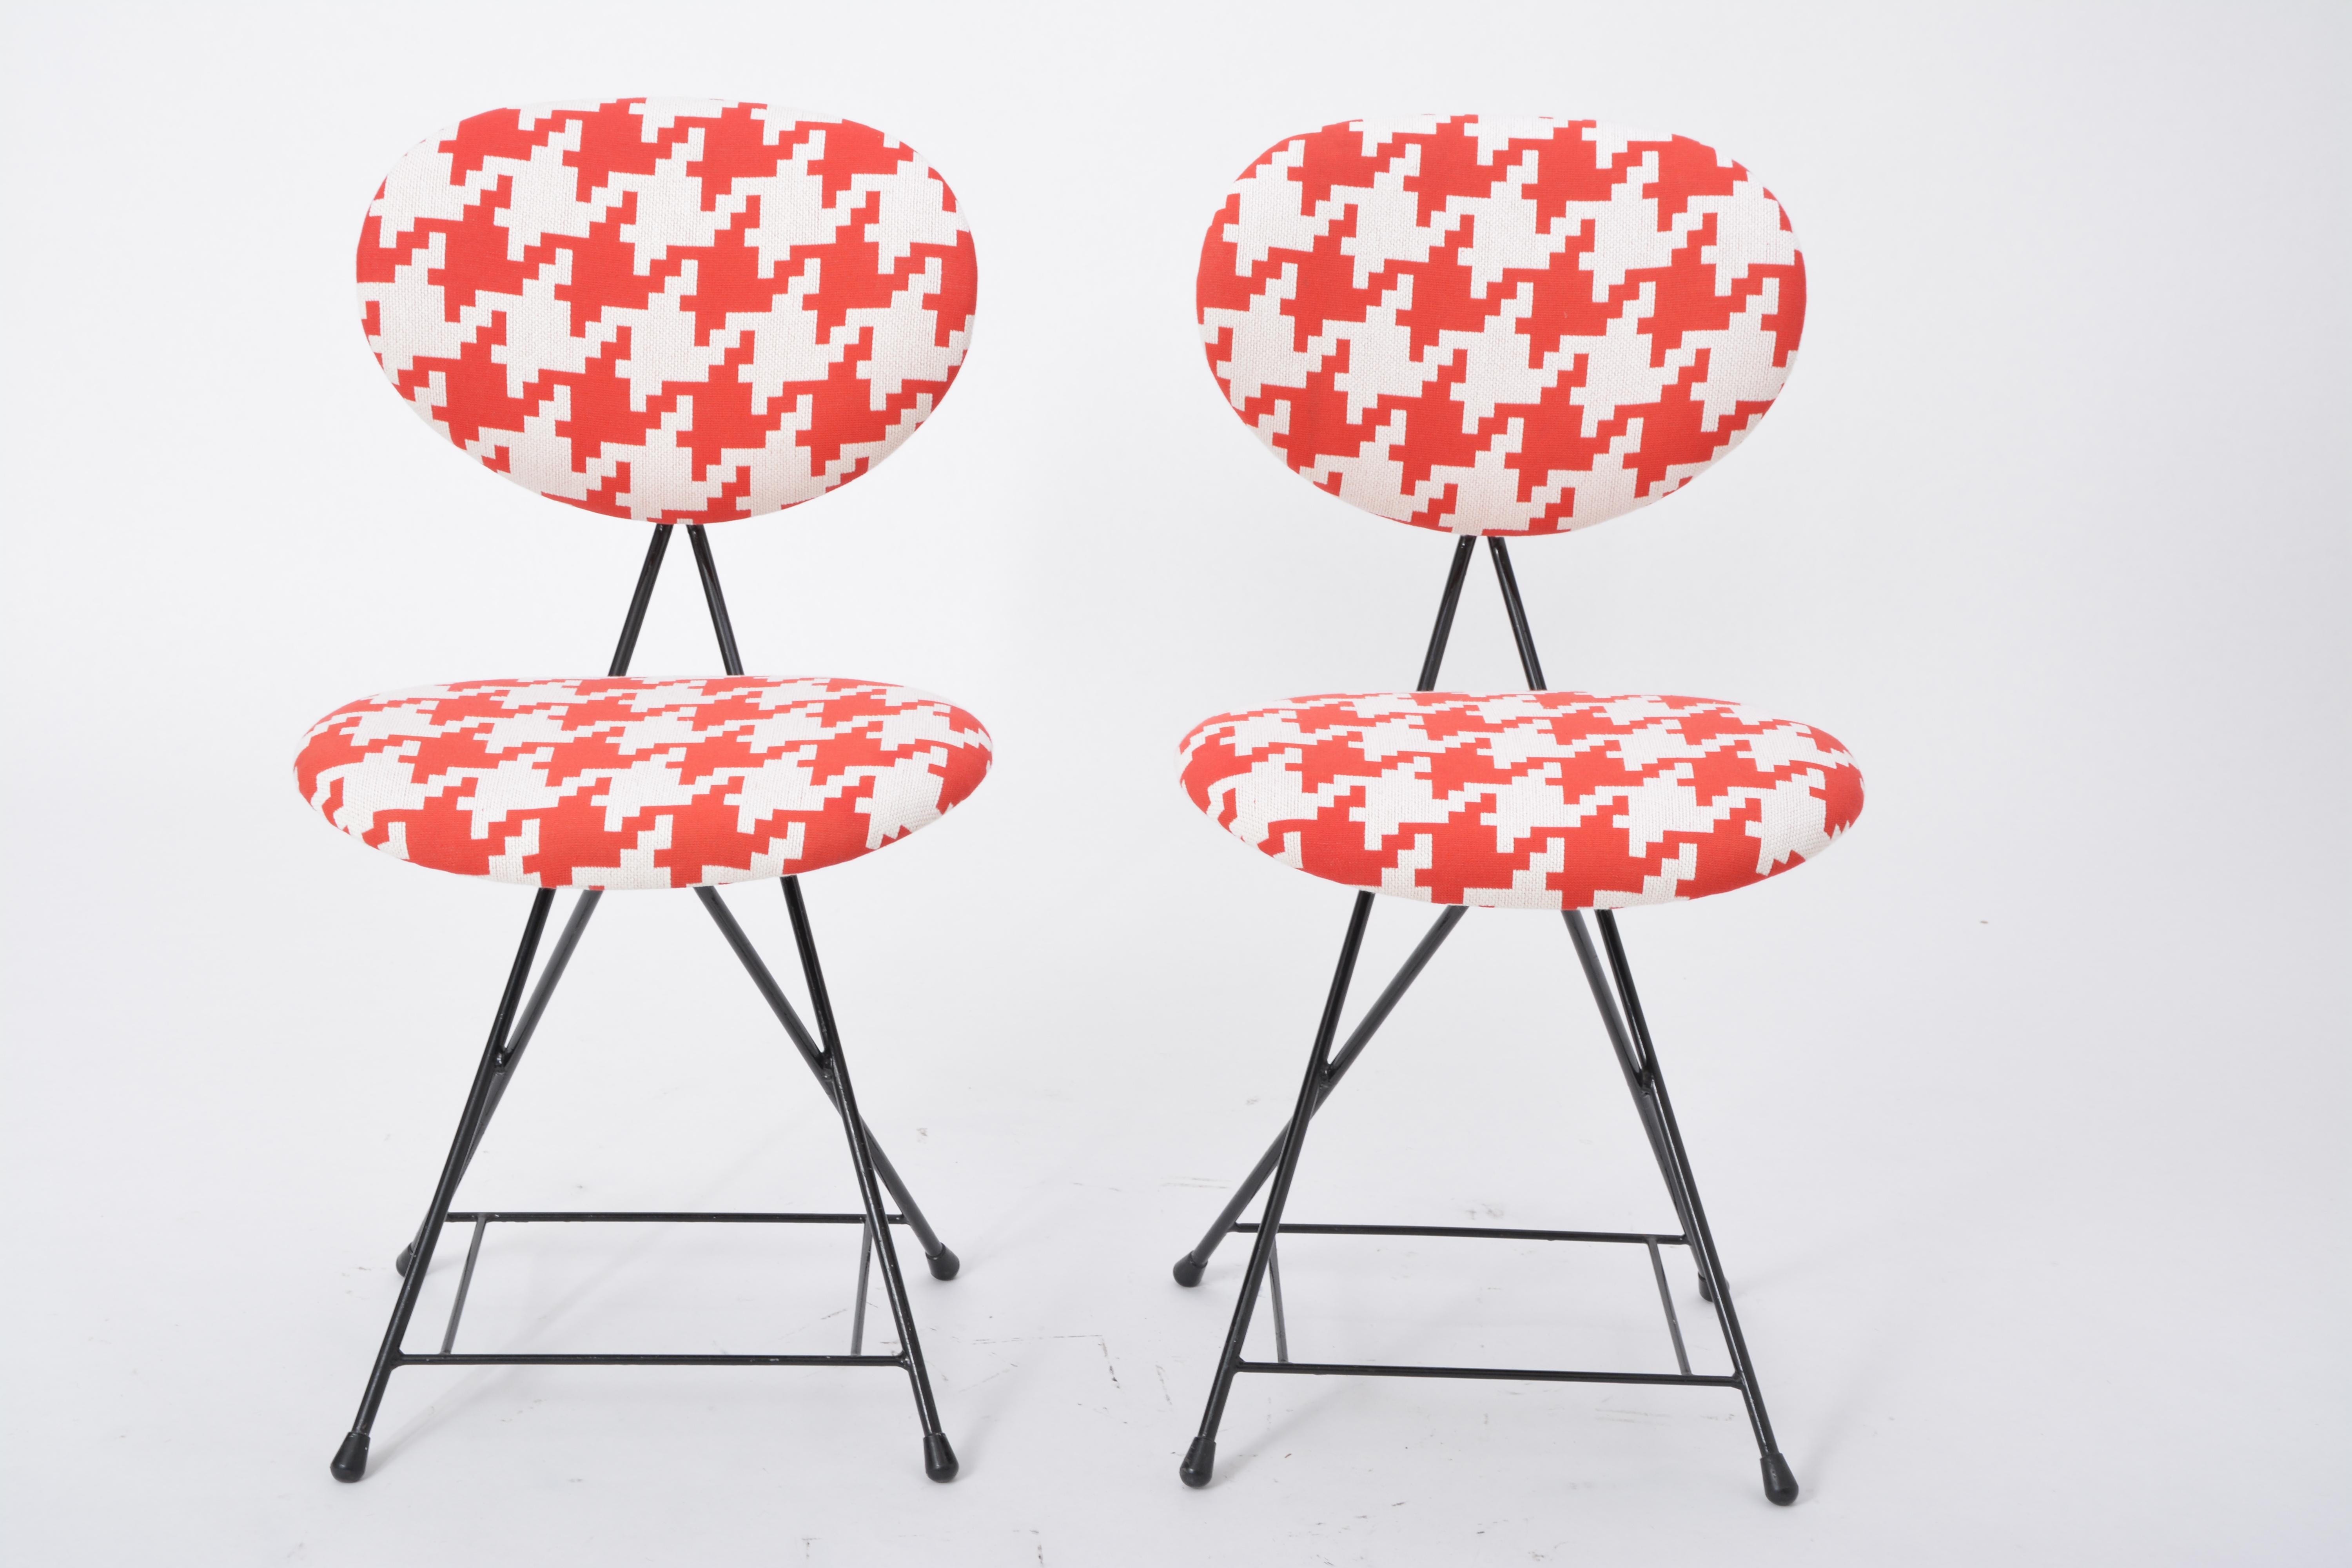 Paire de chaises F & T hollandaises modernes du milieu du siècle dernier, retapissées, par Rob Parry

Paire de chaises F & T conçues par Rob Parry aux Pays-Bas en 1953. Chaque chaise présente une structure en métal tubulaire laqué noir et a été